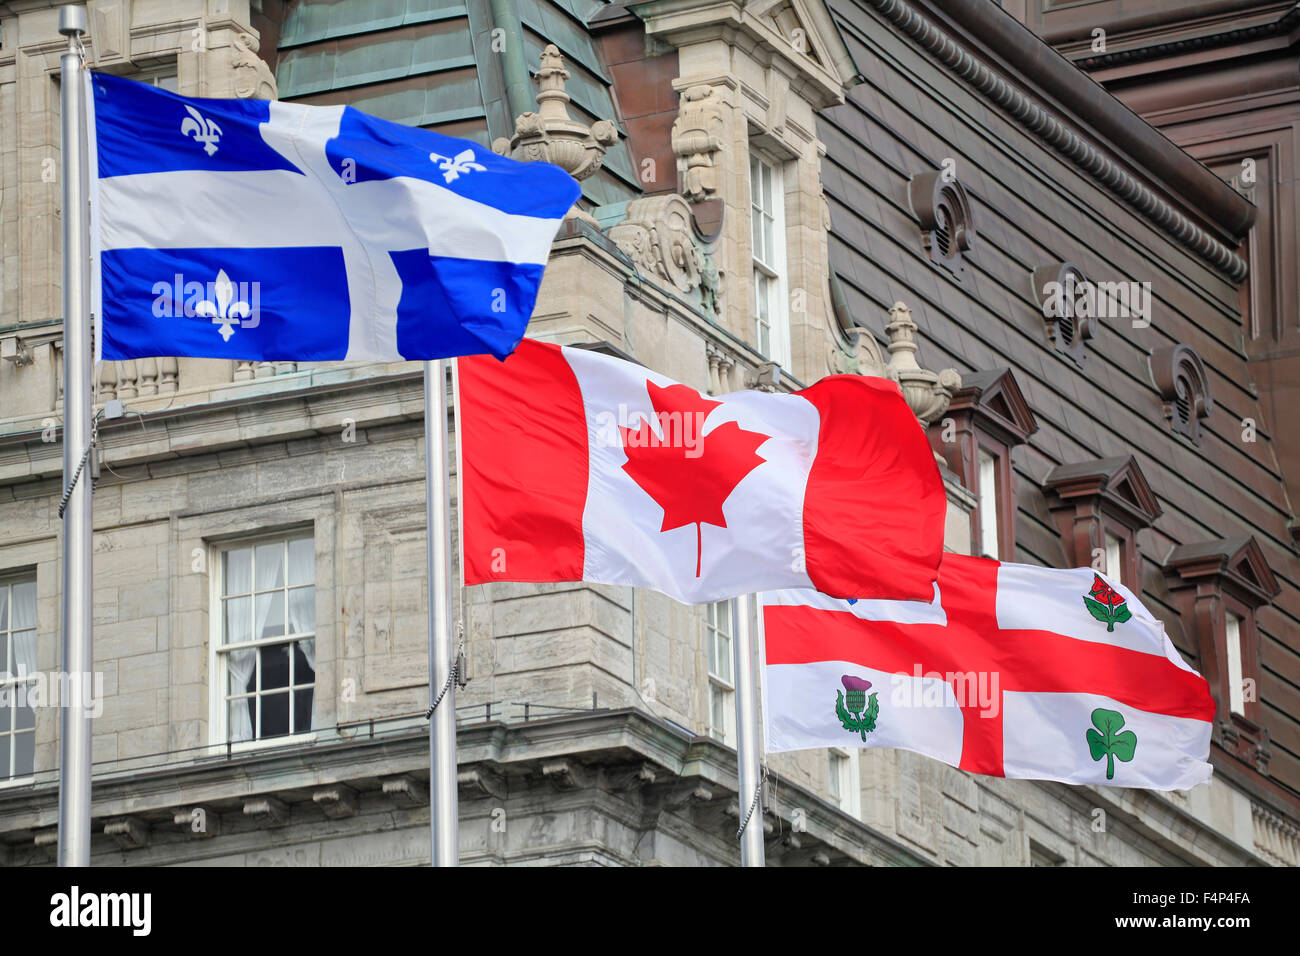 Quebec, Canadá y Montreal agitando banderas con el primer plano del Ayuntamiento de la ciudad de Montreal, Quebec, Canadá Foto de stock